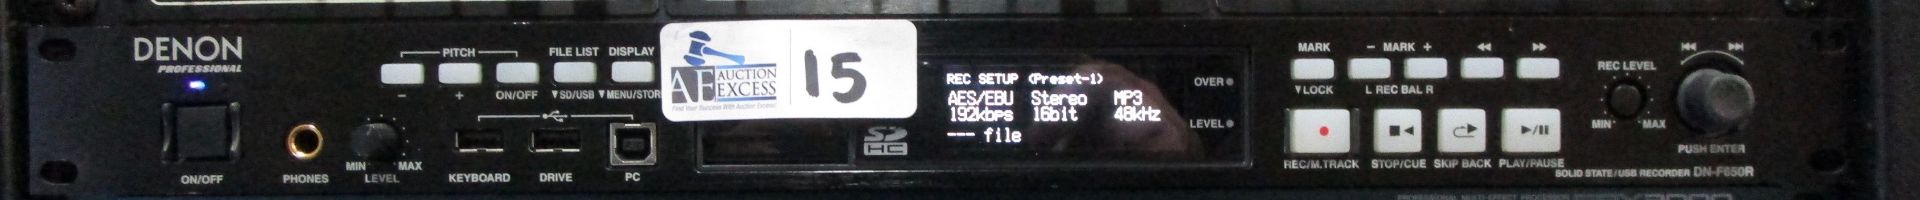 DENON DN-F650R SOLID STATE USB RECORDER